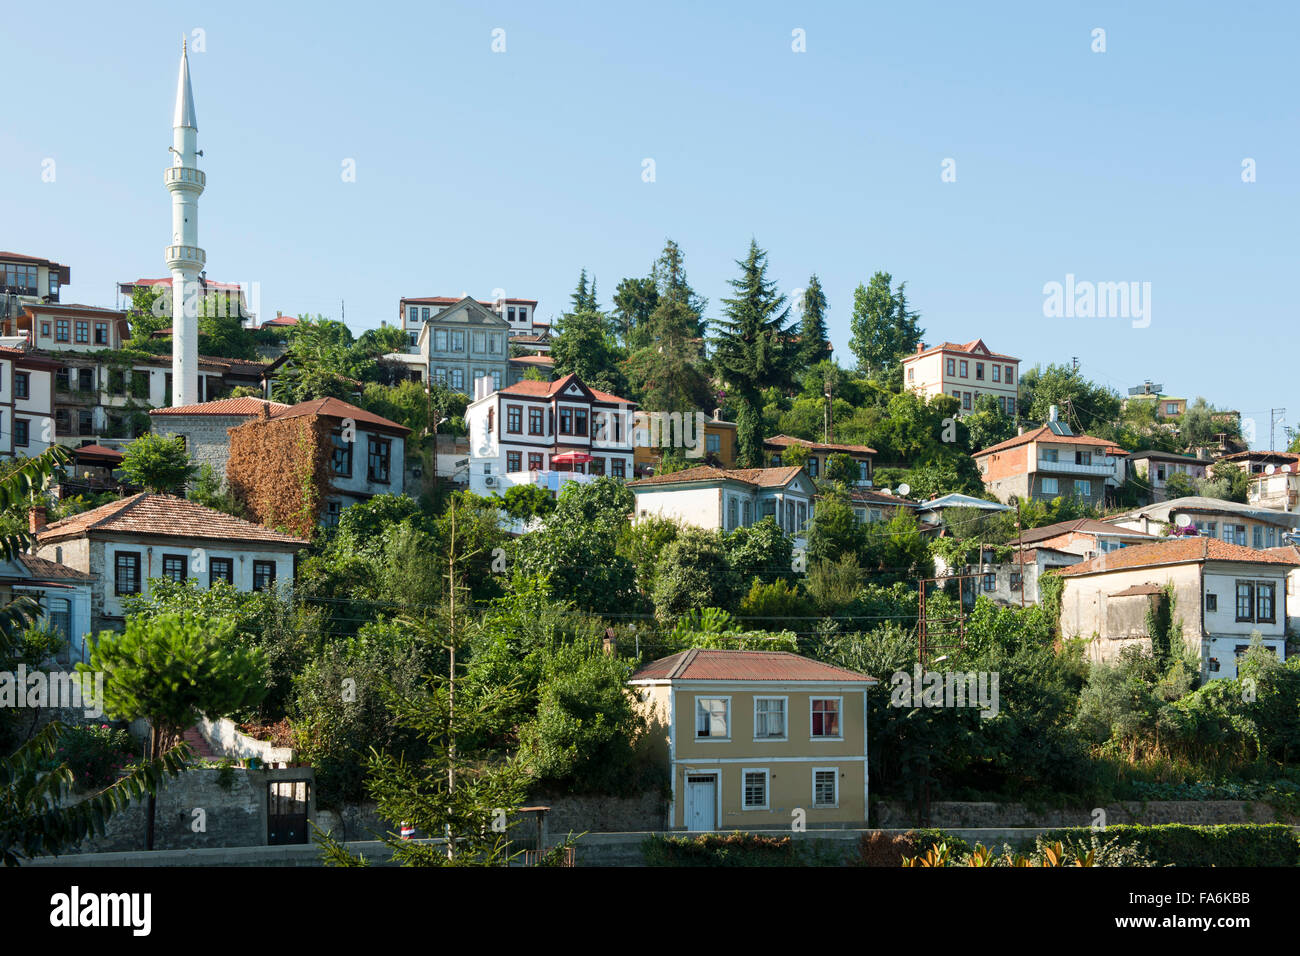 Türkei, östliche Schwarzmeeküste, Akcaabat, Blick auf die Altstdadt mit den historischen Konaks. Die Stadt, die direkt am Schwar Stock Photo